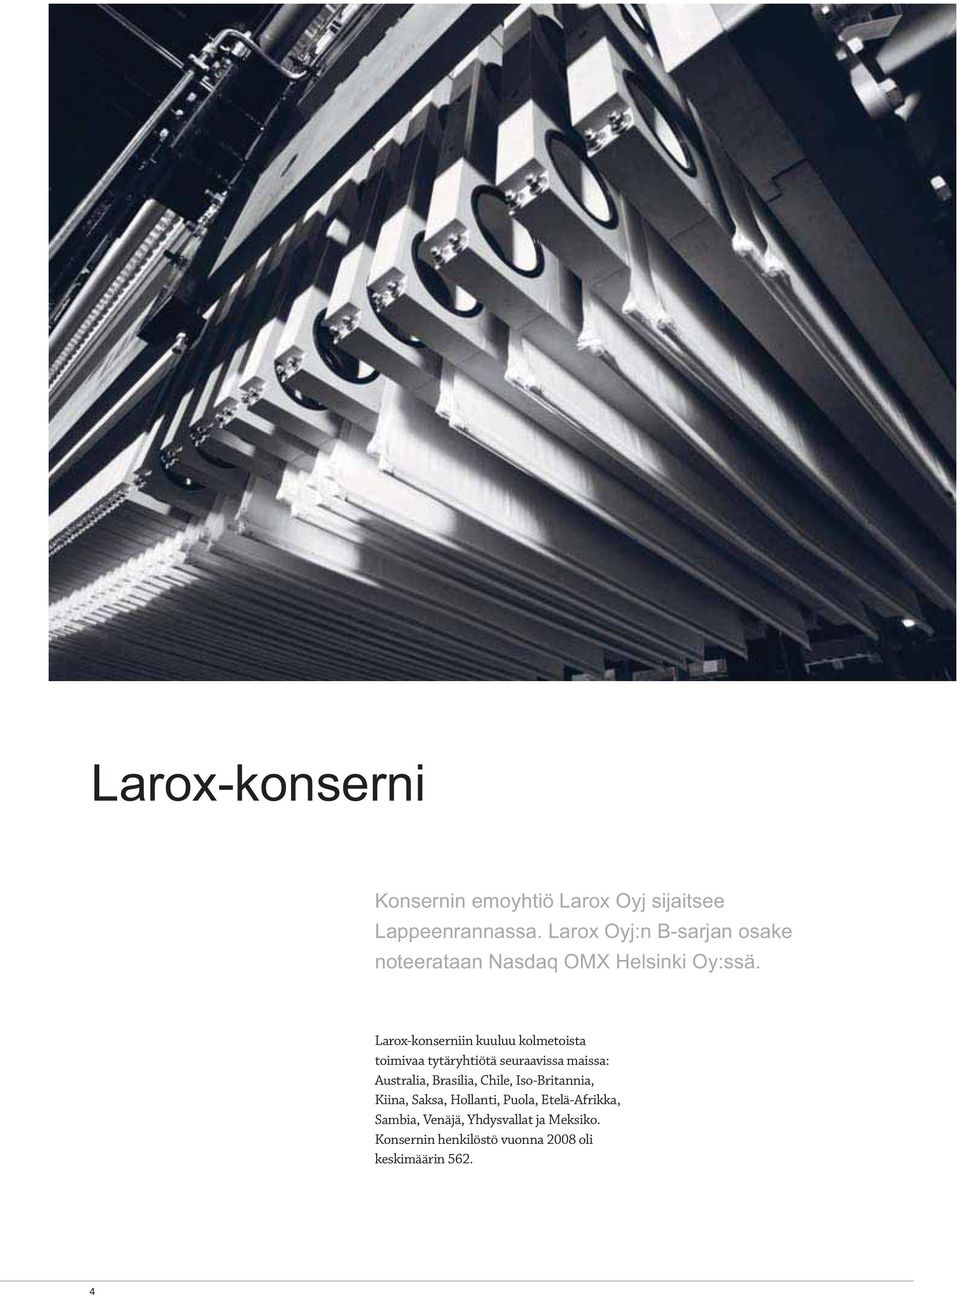 Larox-konserniin kuuluu kolmetoista toimivaa tytäryhtiötä seuraavissa maissa: Australia, Brasilia,